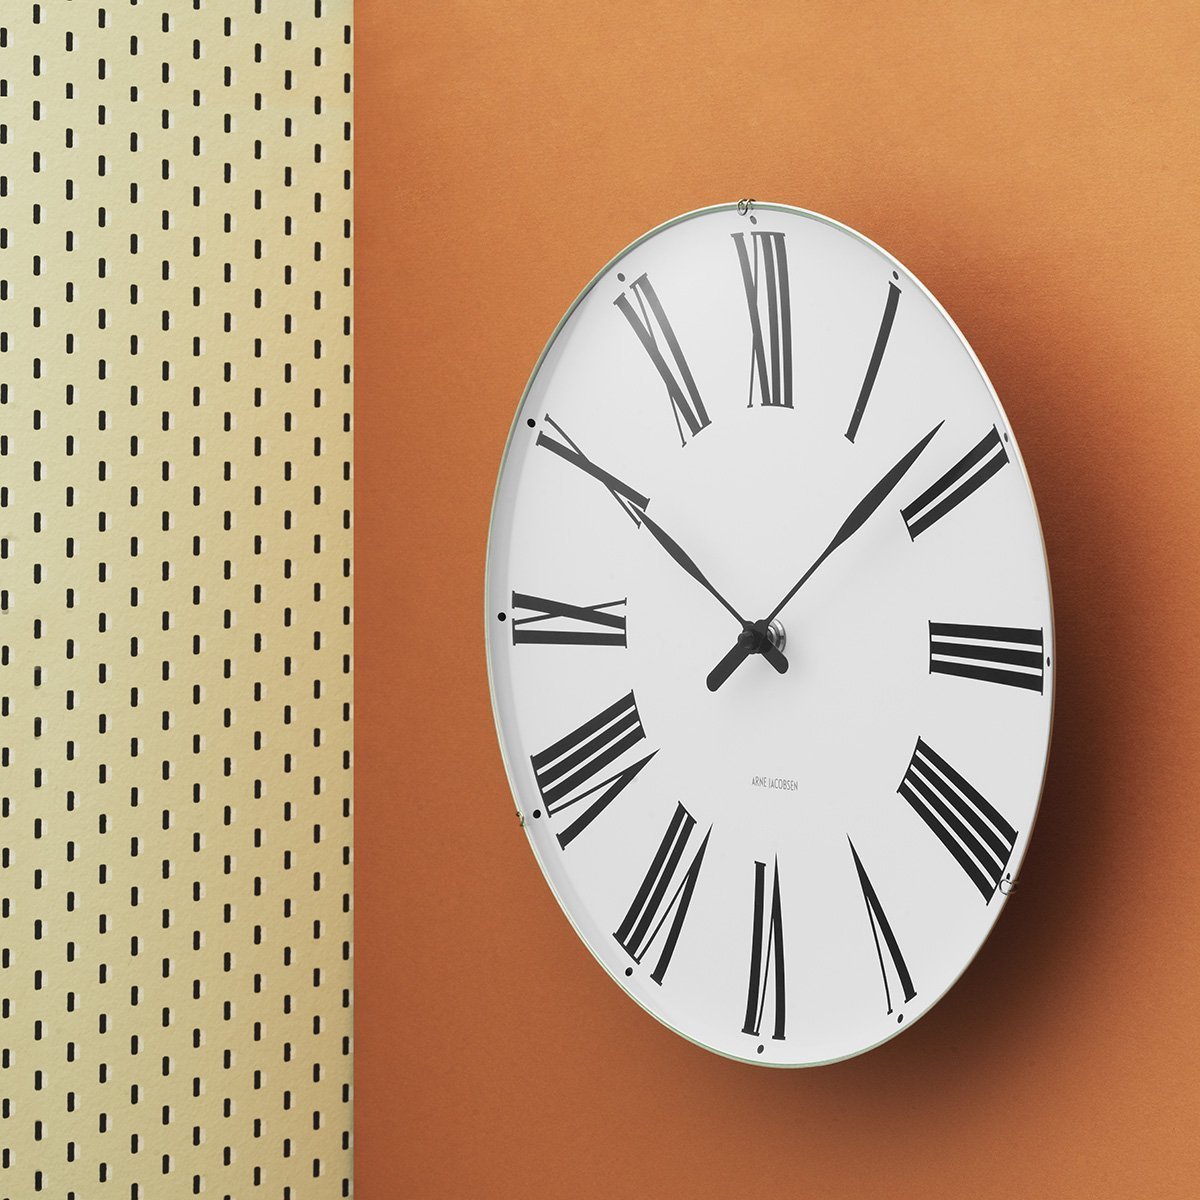 Relógio de parede romano de Arne Jacobsen, 21 cm